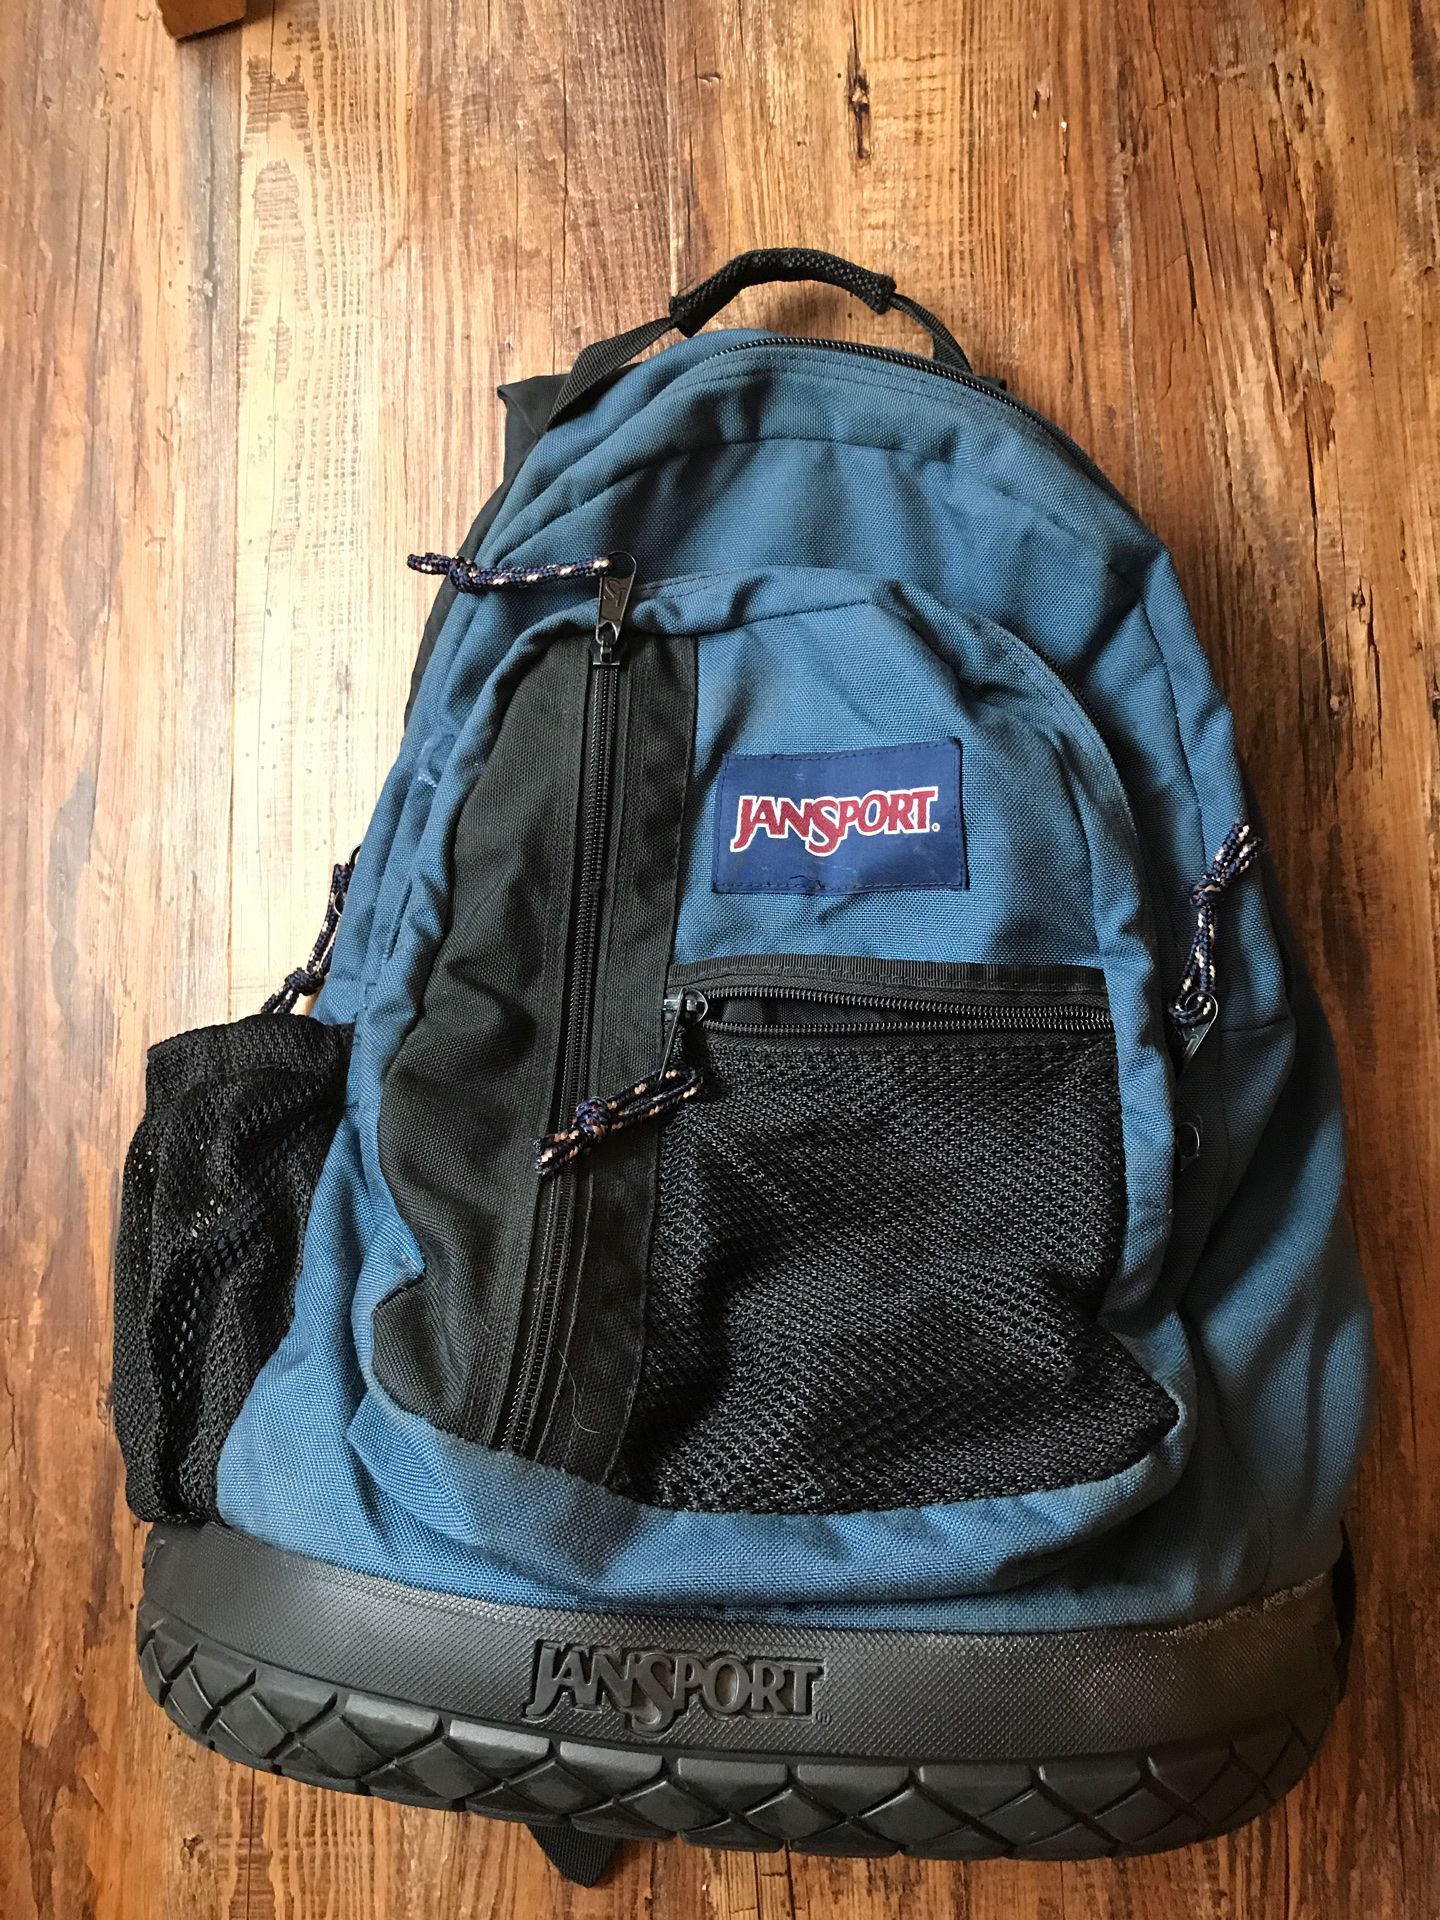 Jansport rubber bottom large backpack